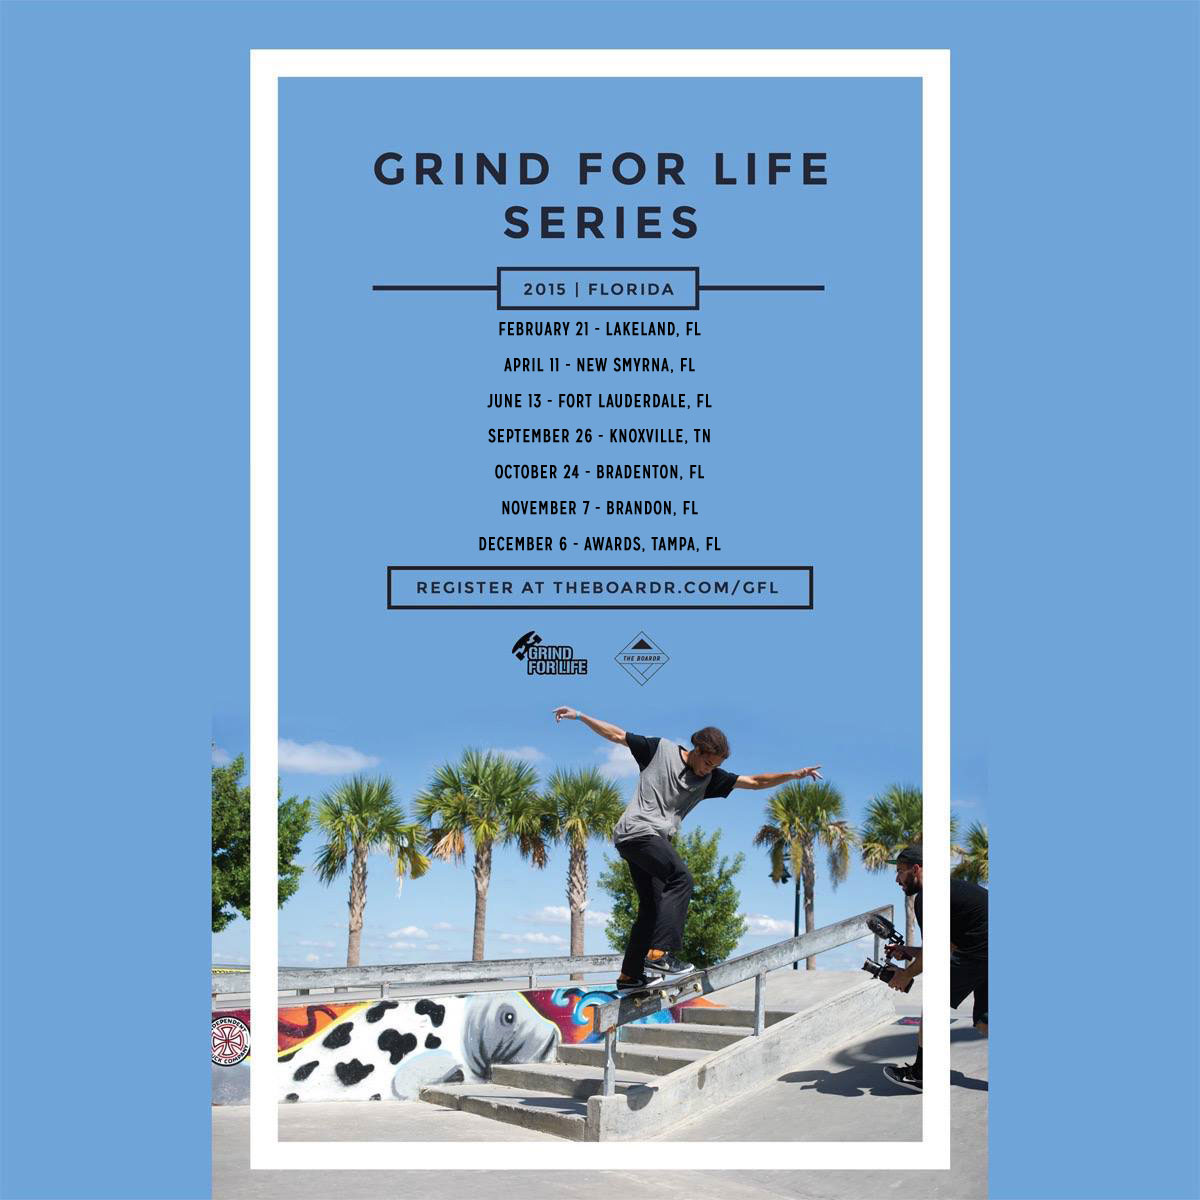 Grind for Life Florida Skateboarding Series